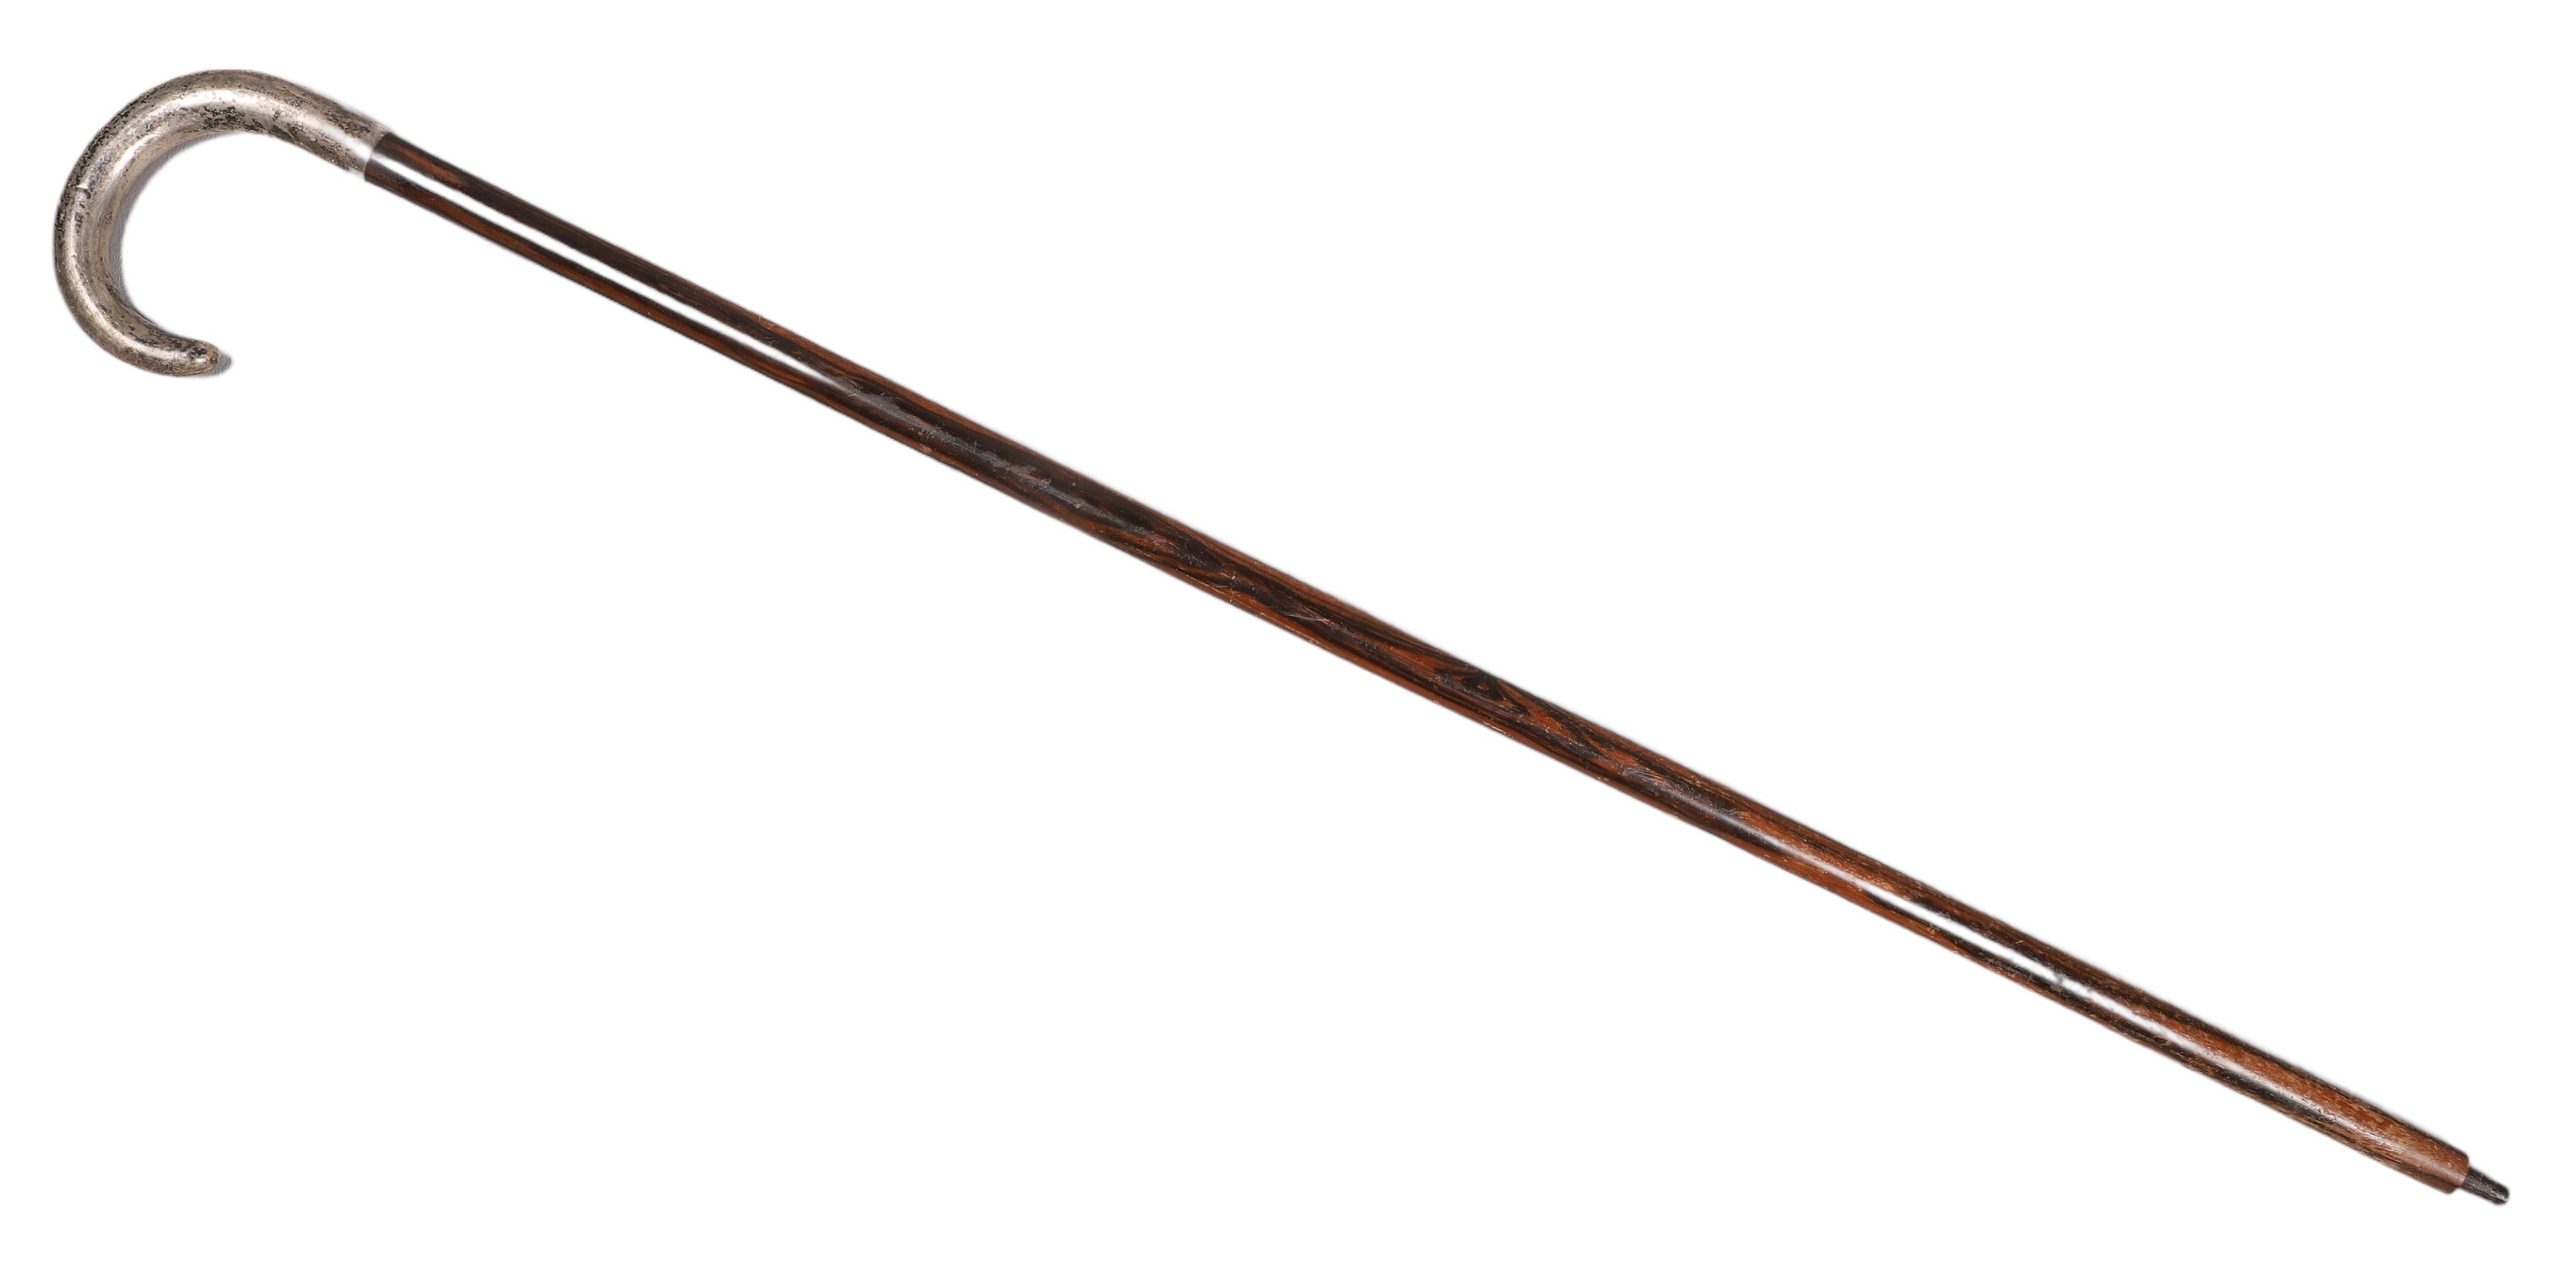 Sterling J-handle cane, engraved